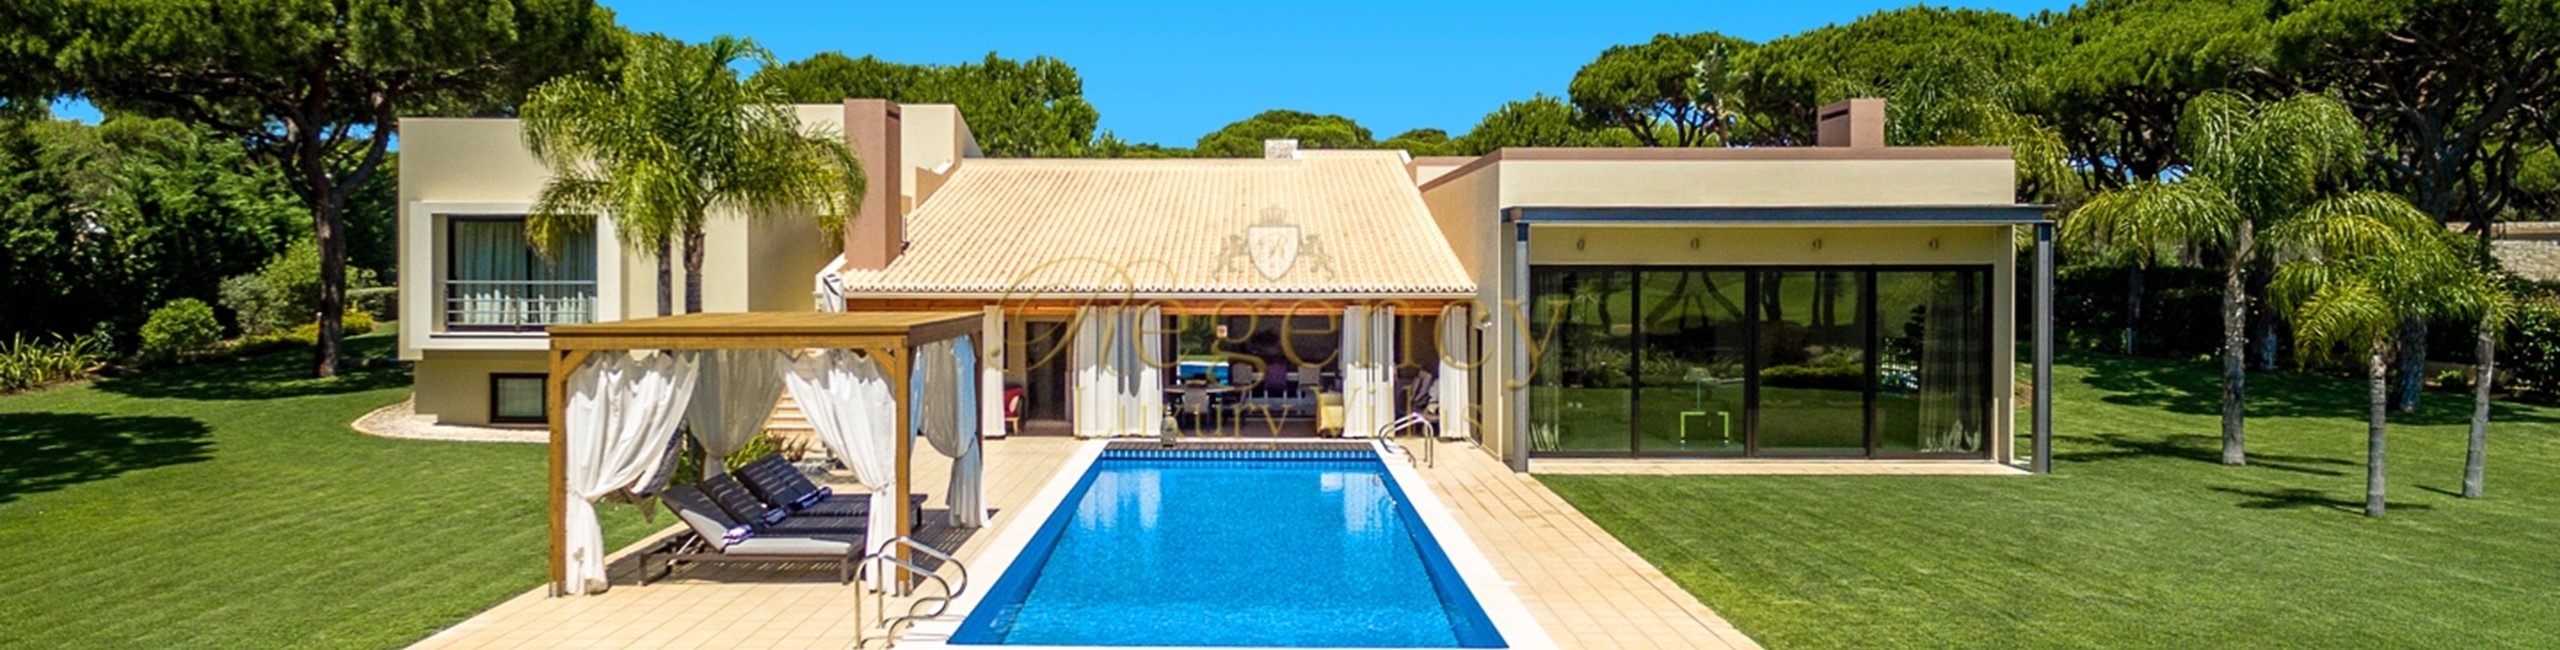 6 Bedroom Villa To Rent In Vilamoura Algarve